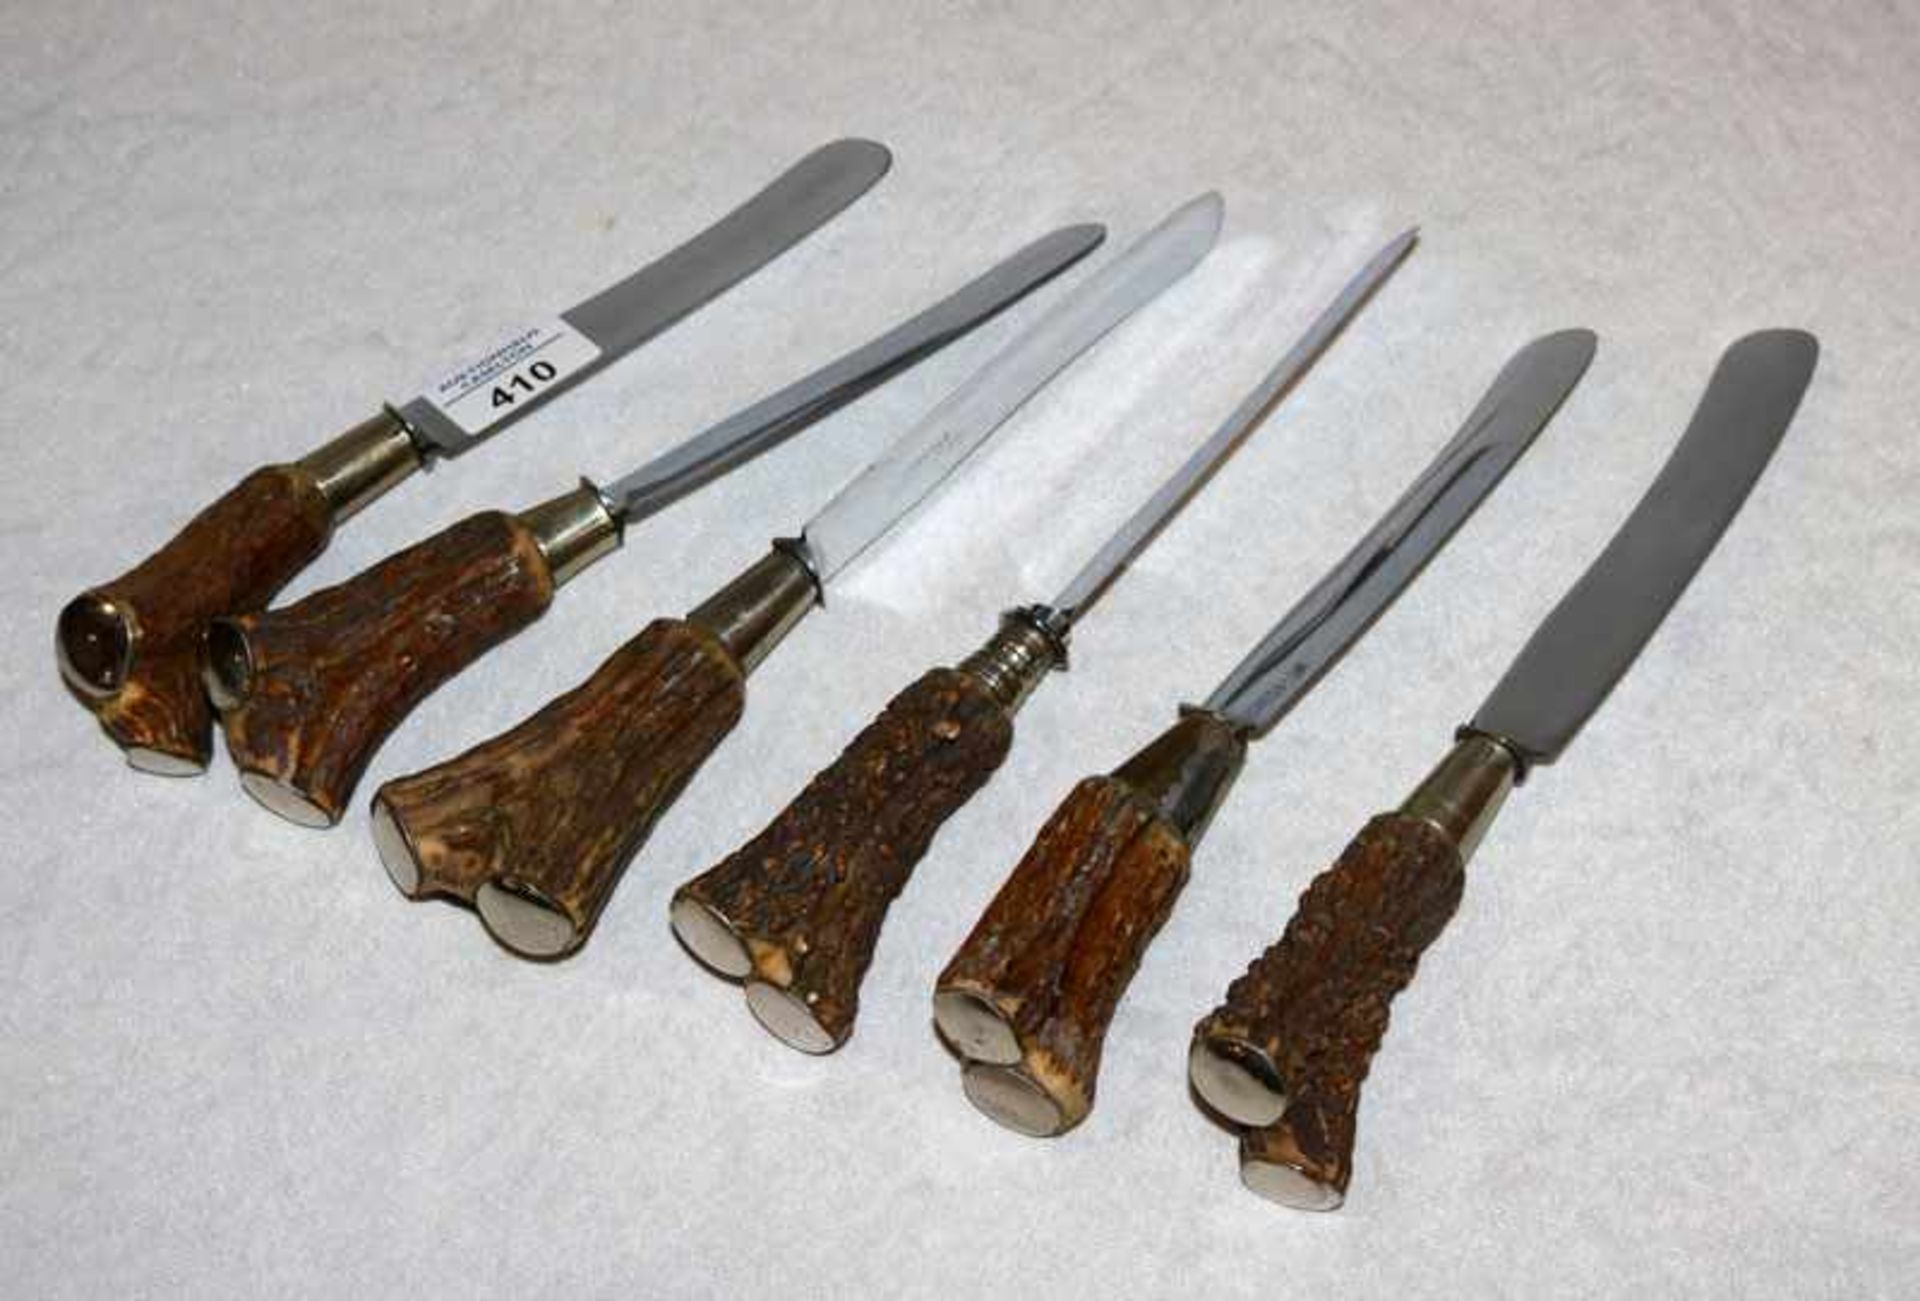 6 Messer mit Horngriffen, Kronprinz Solingen, L 25 cm, Gebrauchsspuren